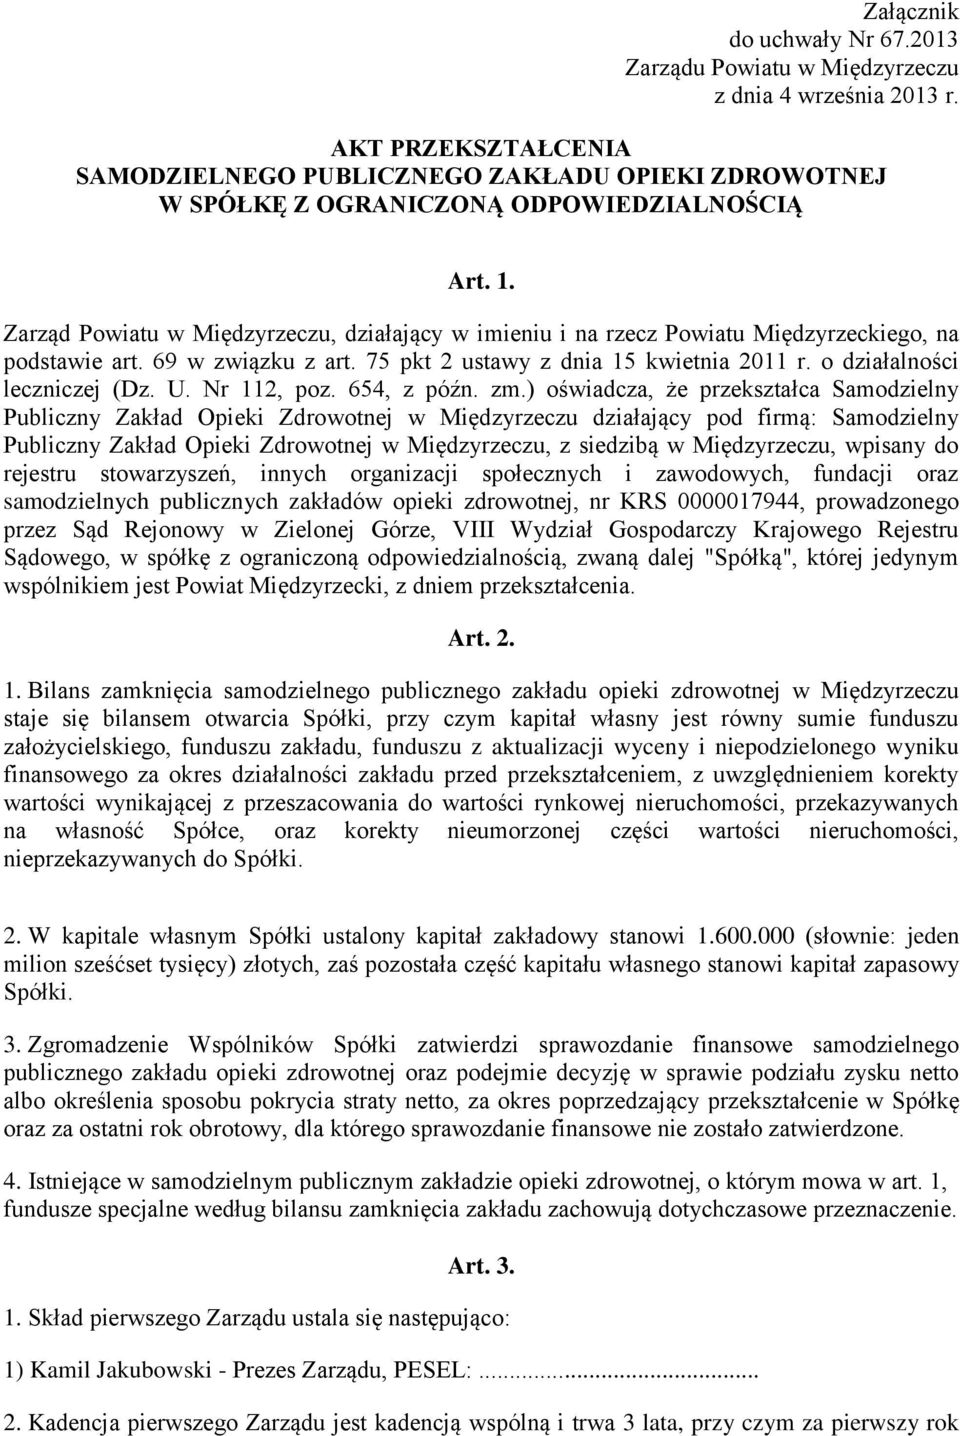 Zarząd Powiatu w Międzyrzeczu, działający w imieniu i na rzecz Powiatu Międzyrzeckiego, na podstawie art. 69 w związku z art. 75 pkt 2 ustawy z dnia 15 kwietnia 2011 r. o działalności leczniczej (Dz.